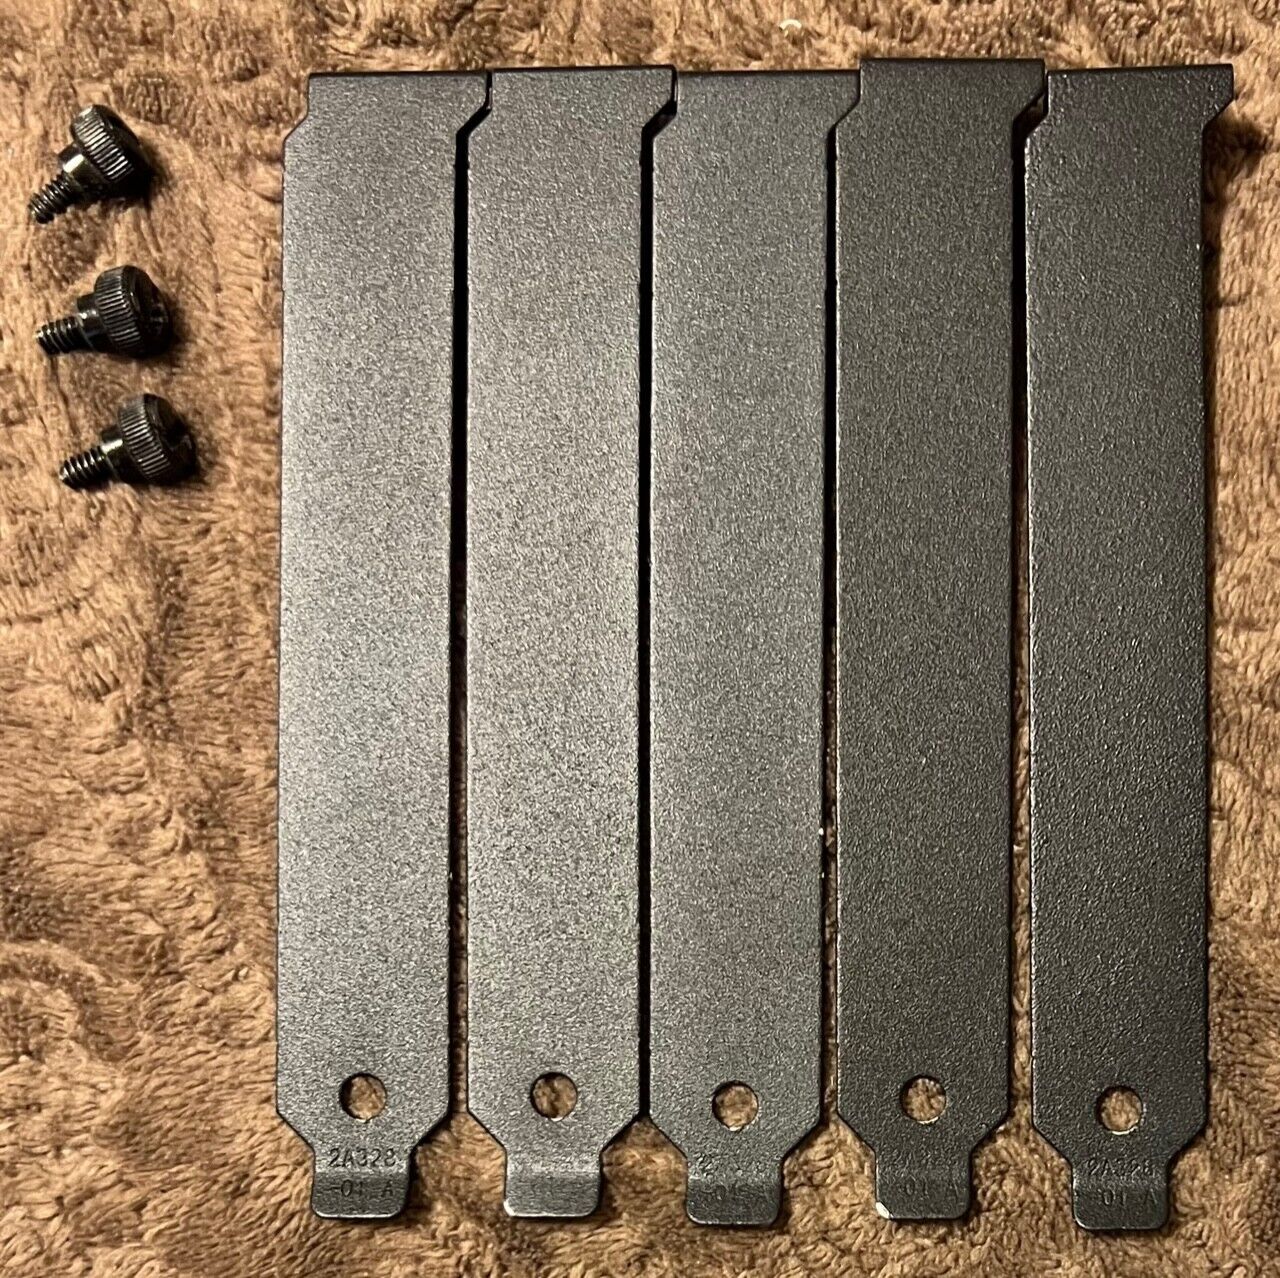 5x Corsair Obsidian 800D PCI Slot Covers w/ 3x Thumb Screws Black Steel Metal